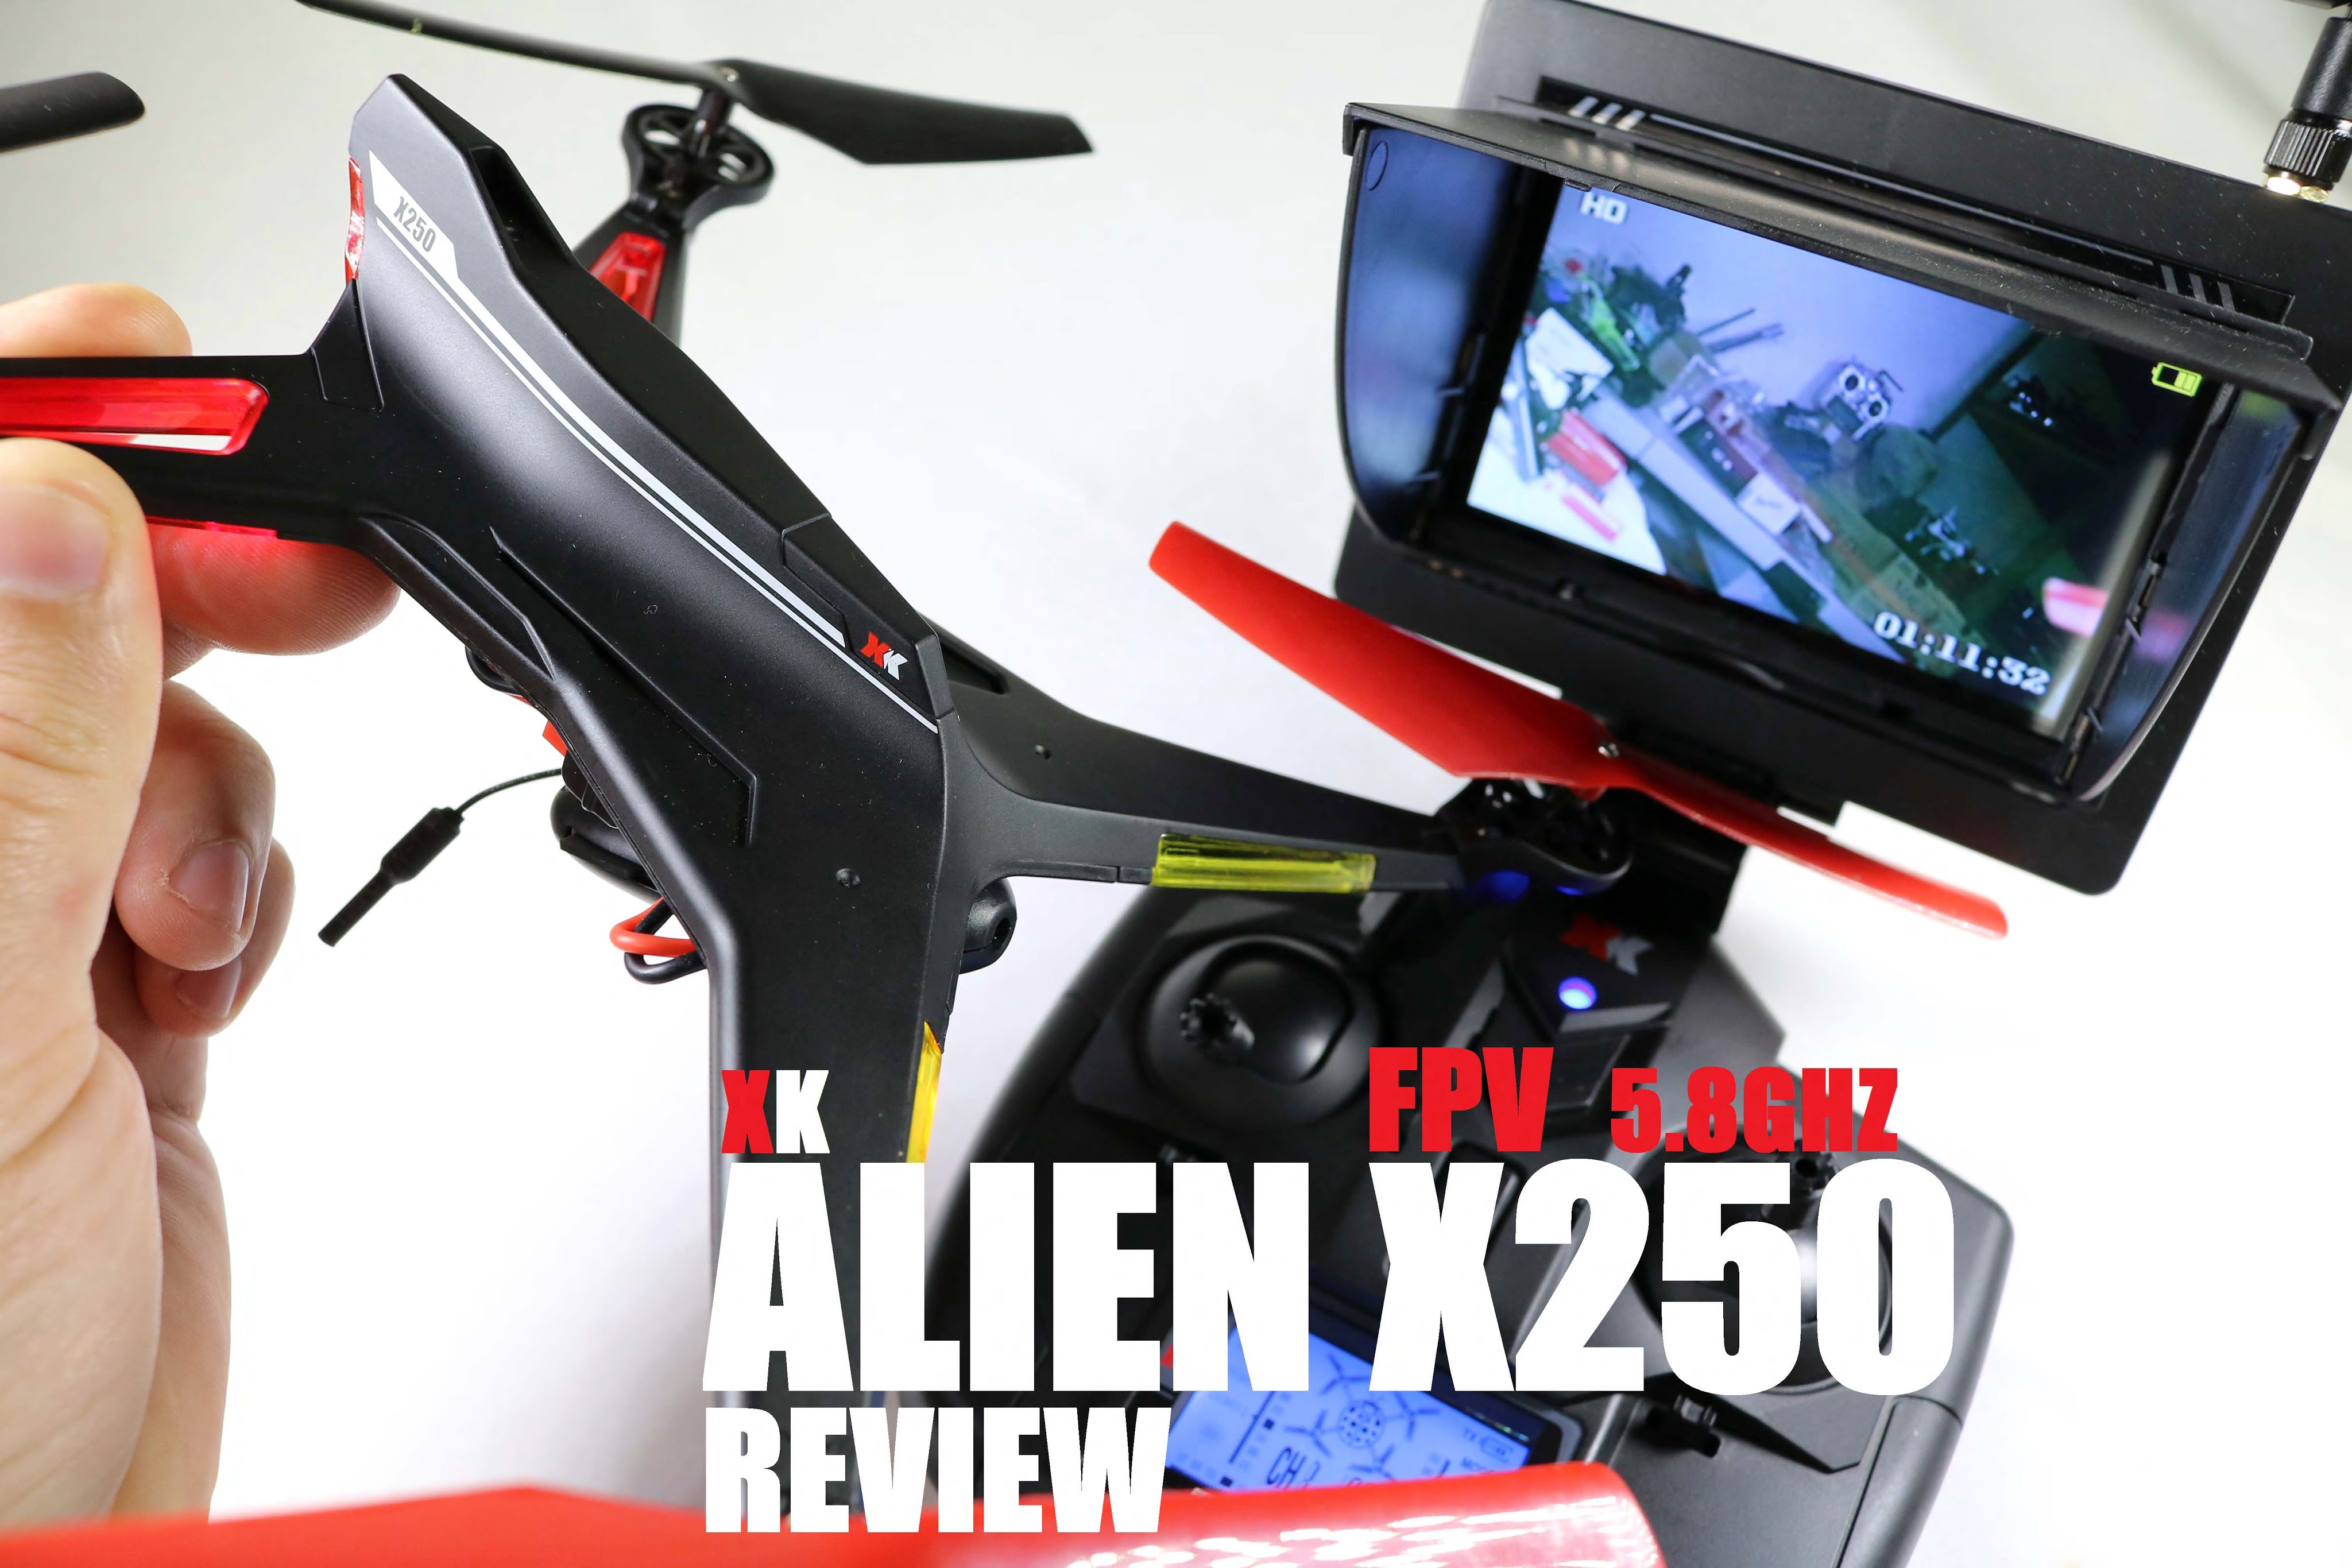 XK ALIEN X250 FPV 5.8ghz Quadcopter Review – [Unbox, Inspection, Setup]